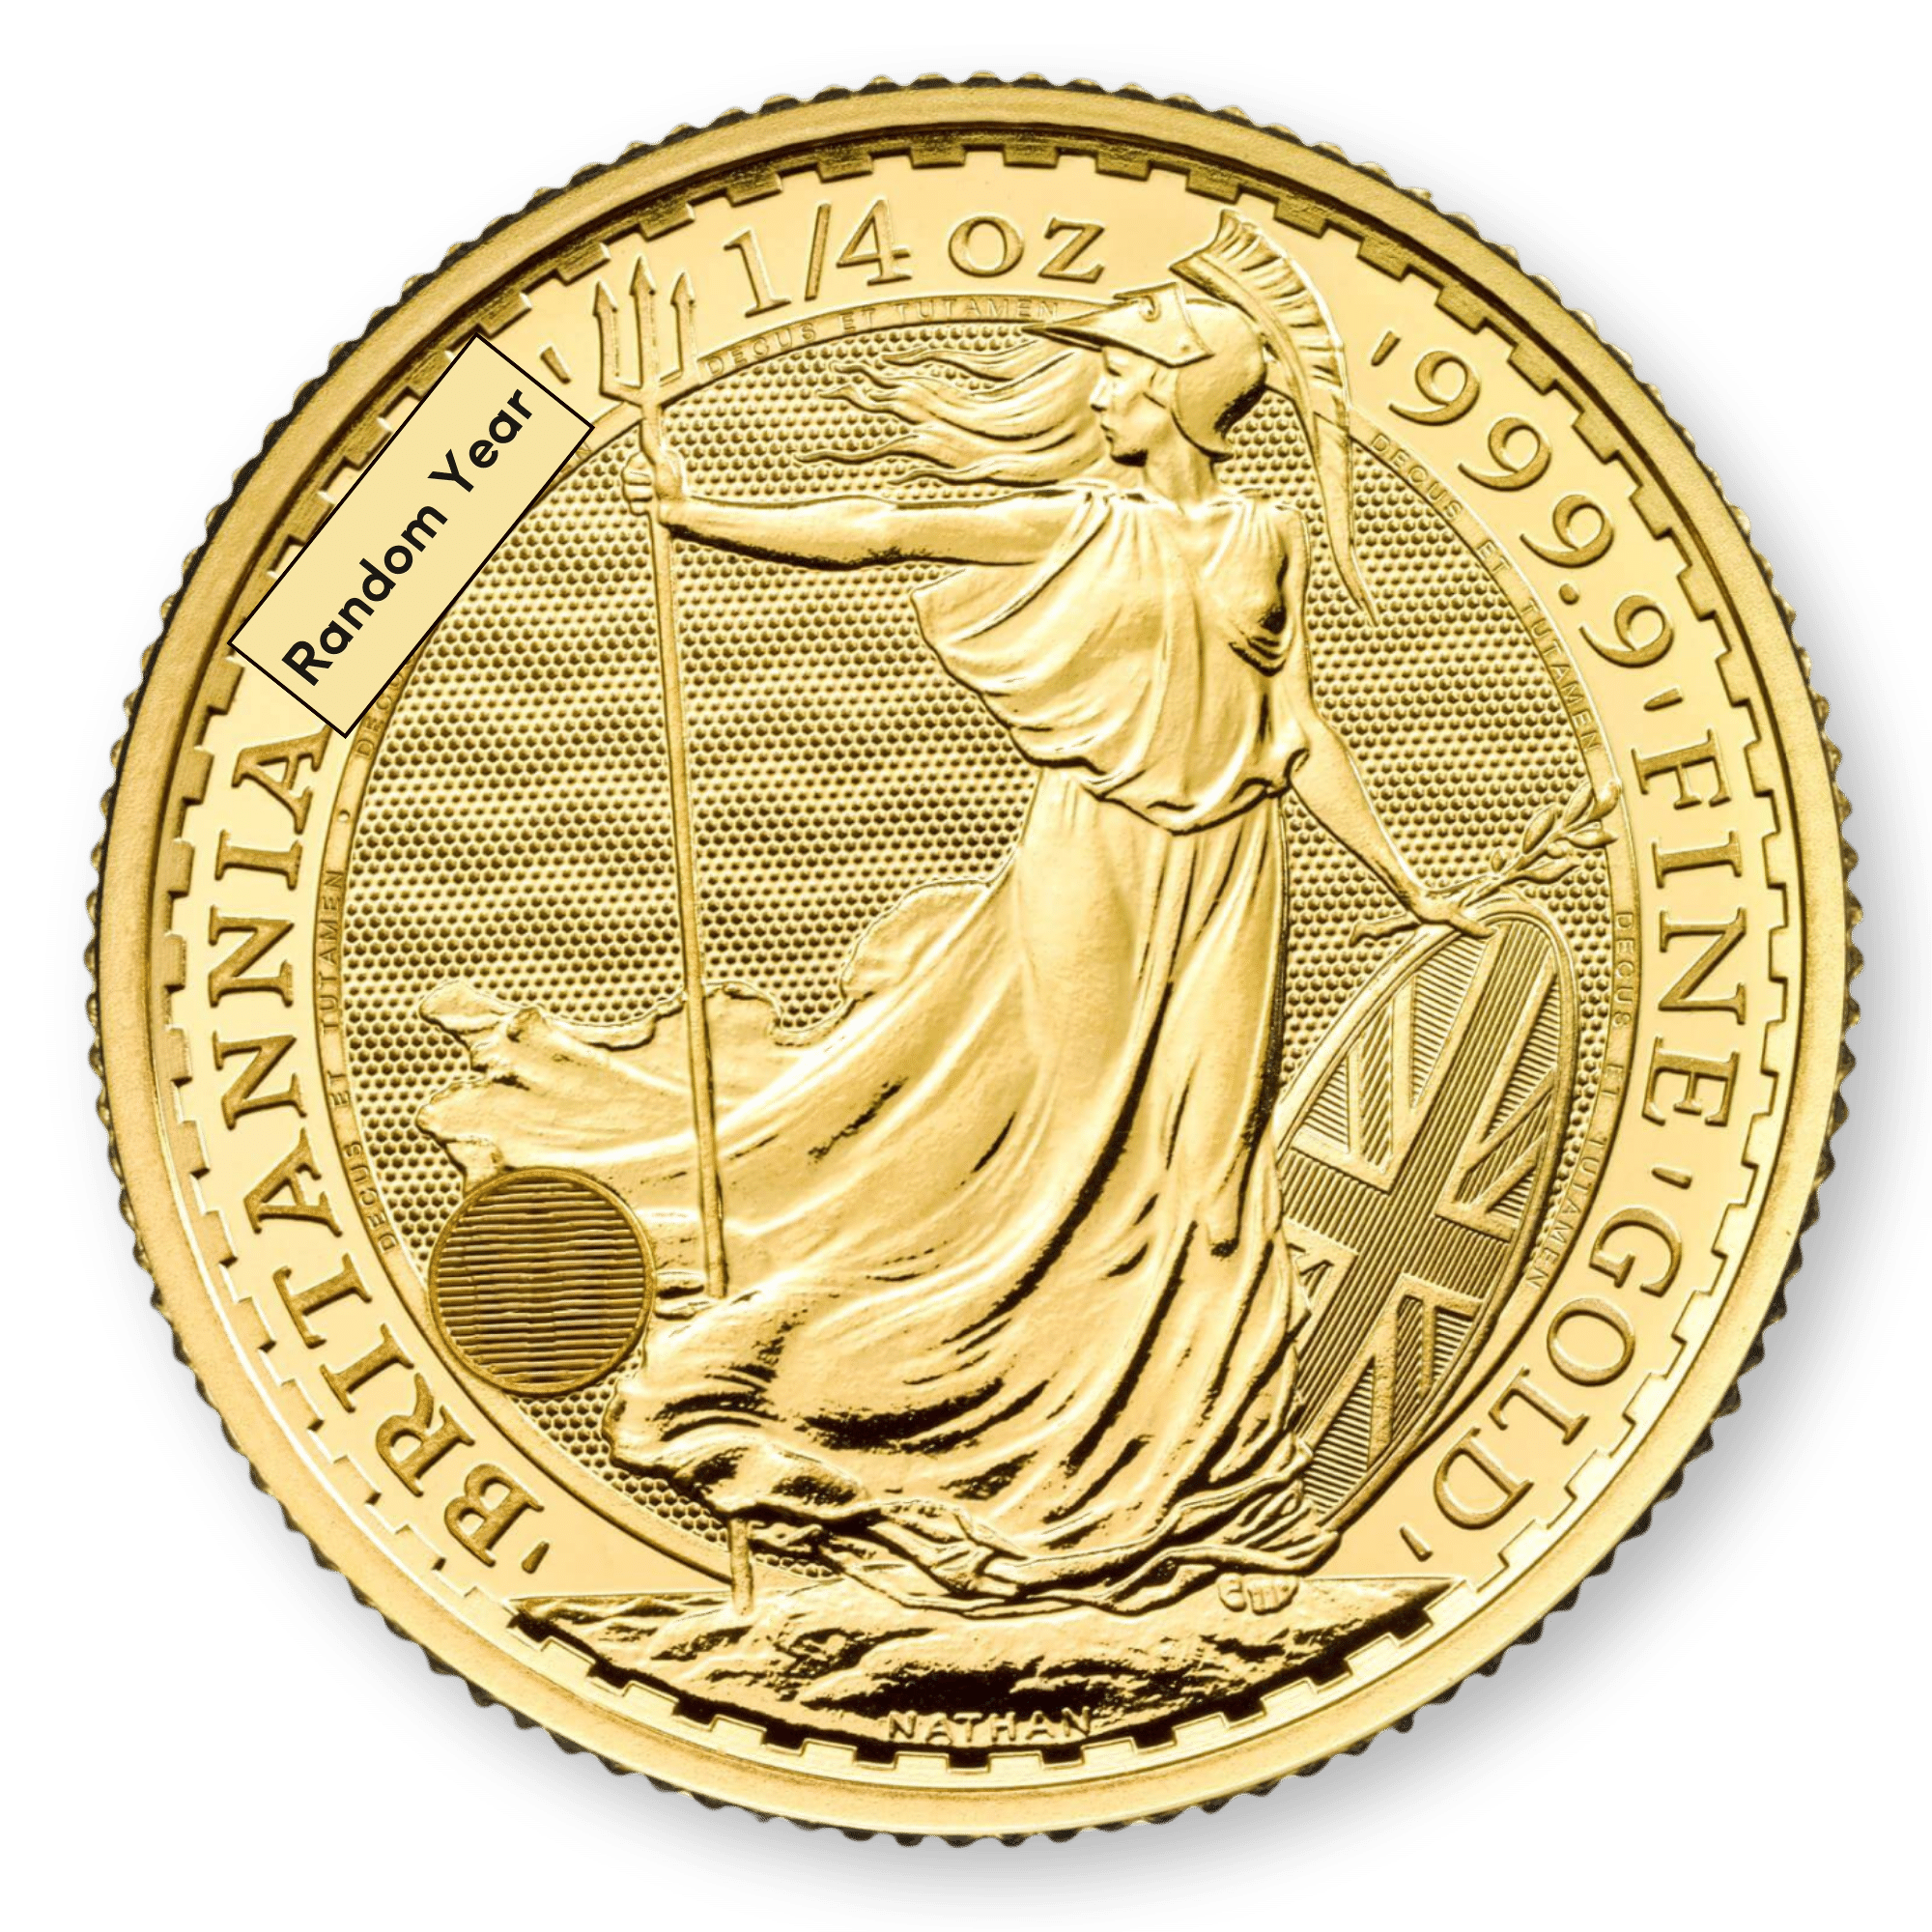 1/4oz Royal Mint Britannia Gold Coin (Random Years)